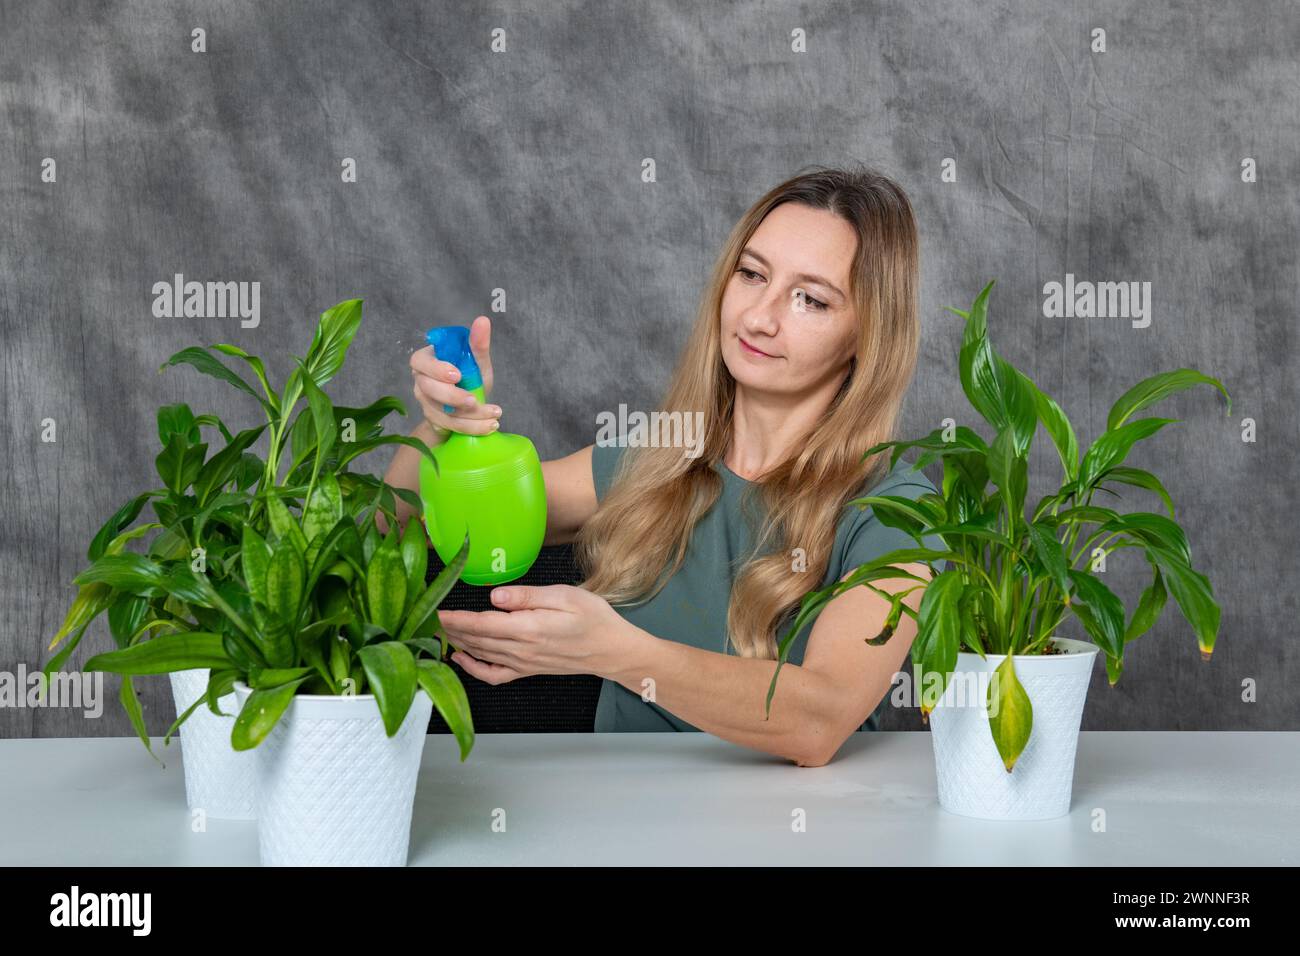 Mädchen mit blonden Haaren, das sich um grüne Pflanzen kümmert, mit Sprenger an einem Tisch Stockfoto